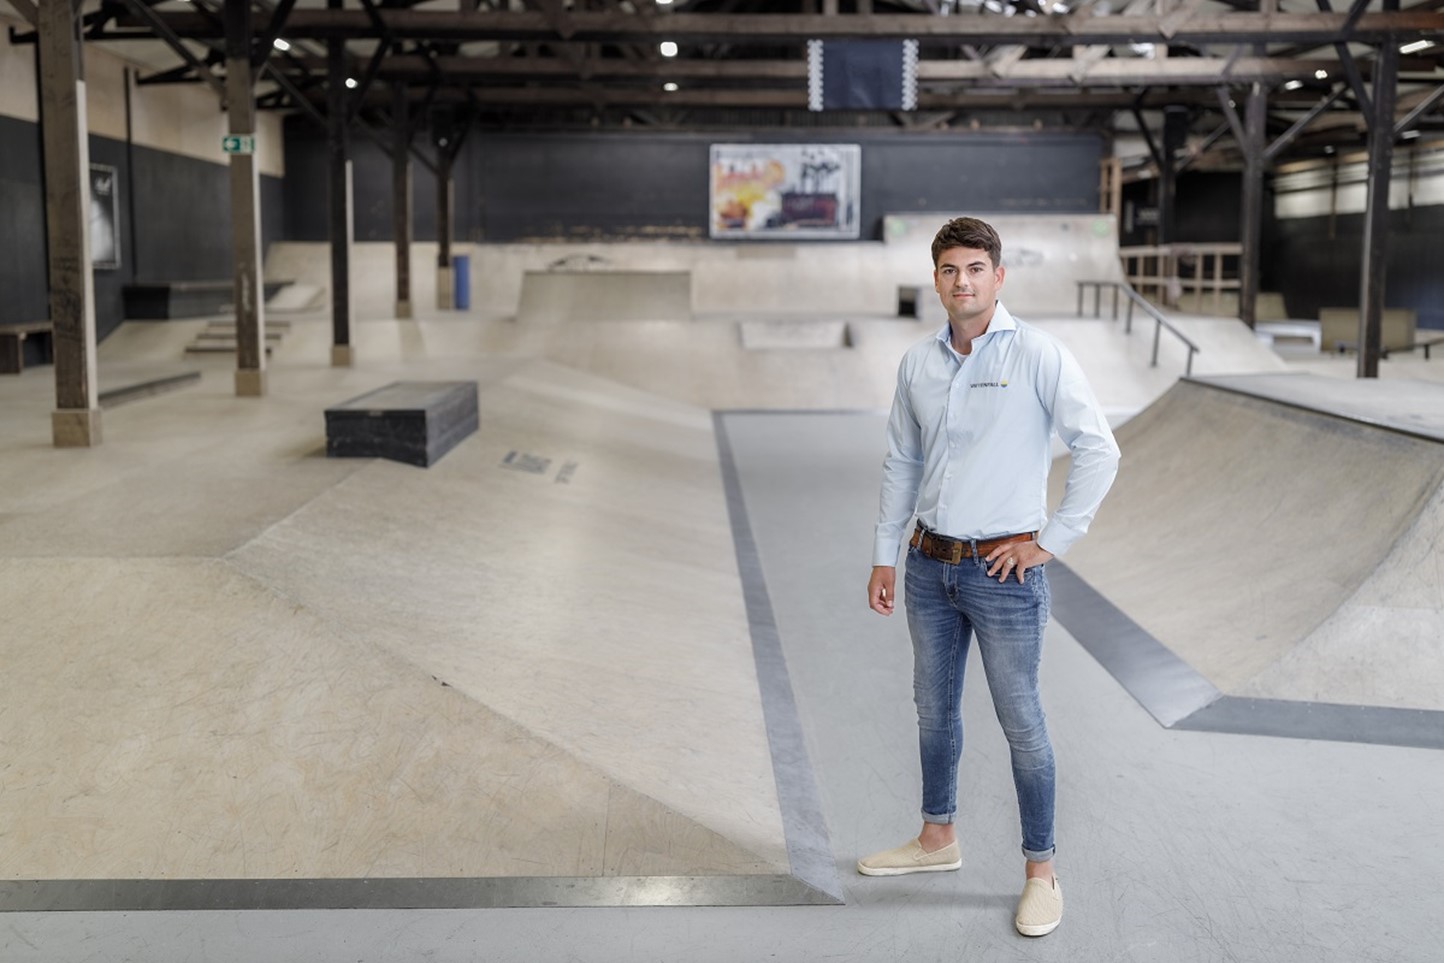 Vlotte adviseur in nette spijkerbroek in indoor skatepark